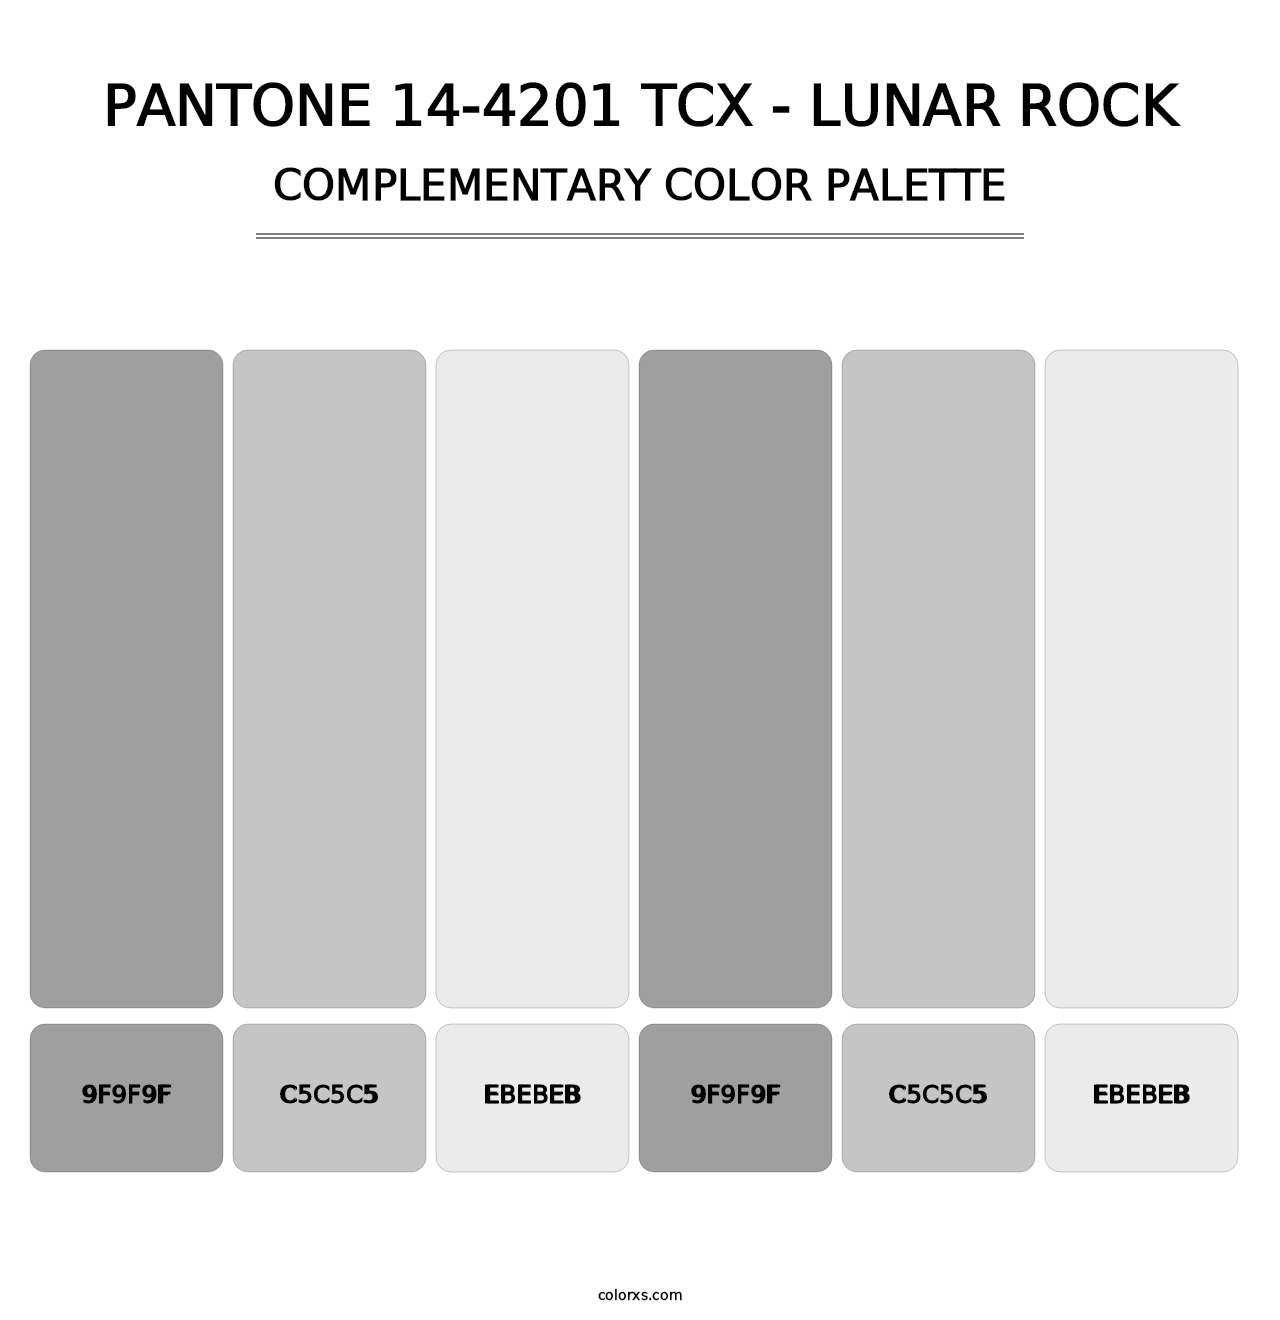 PANTONE 14-4201 TCX - Lunar Rock - Complementary Color Palette